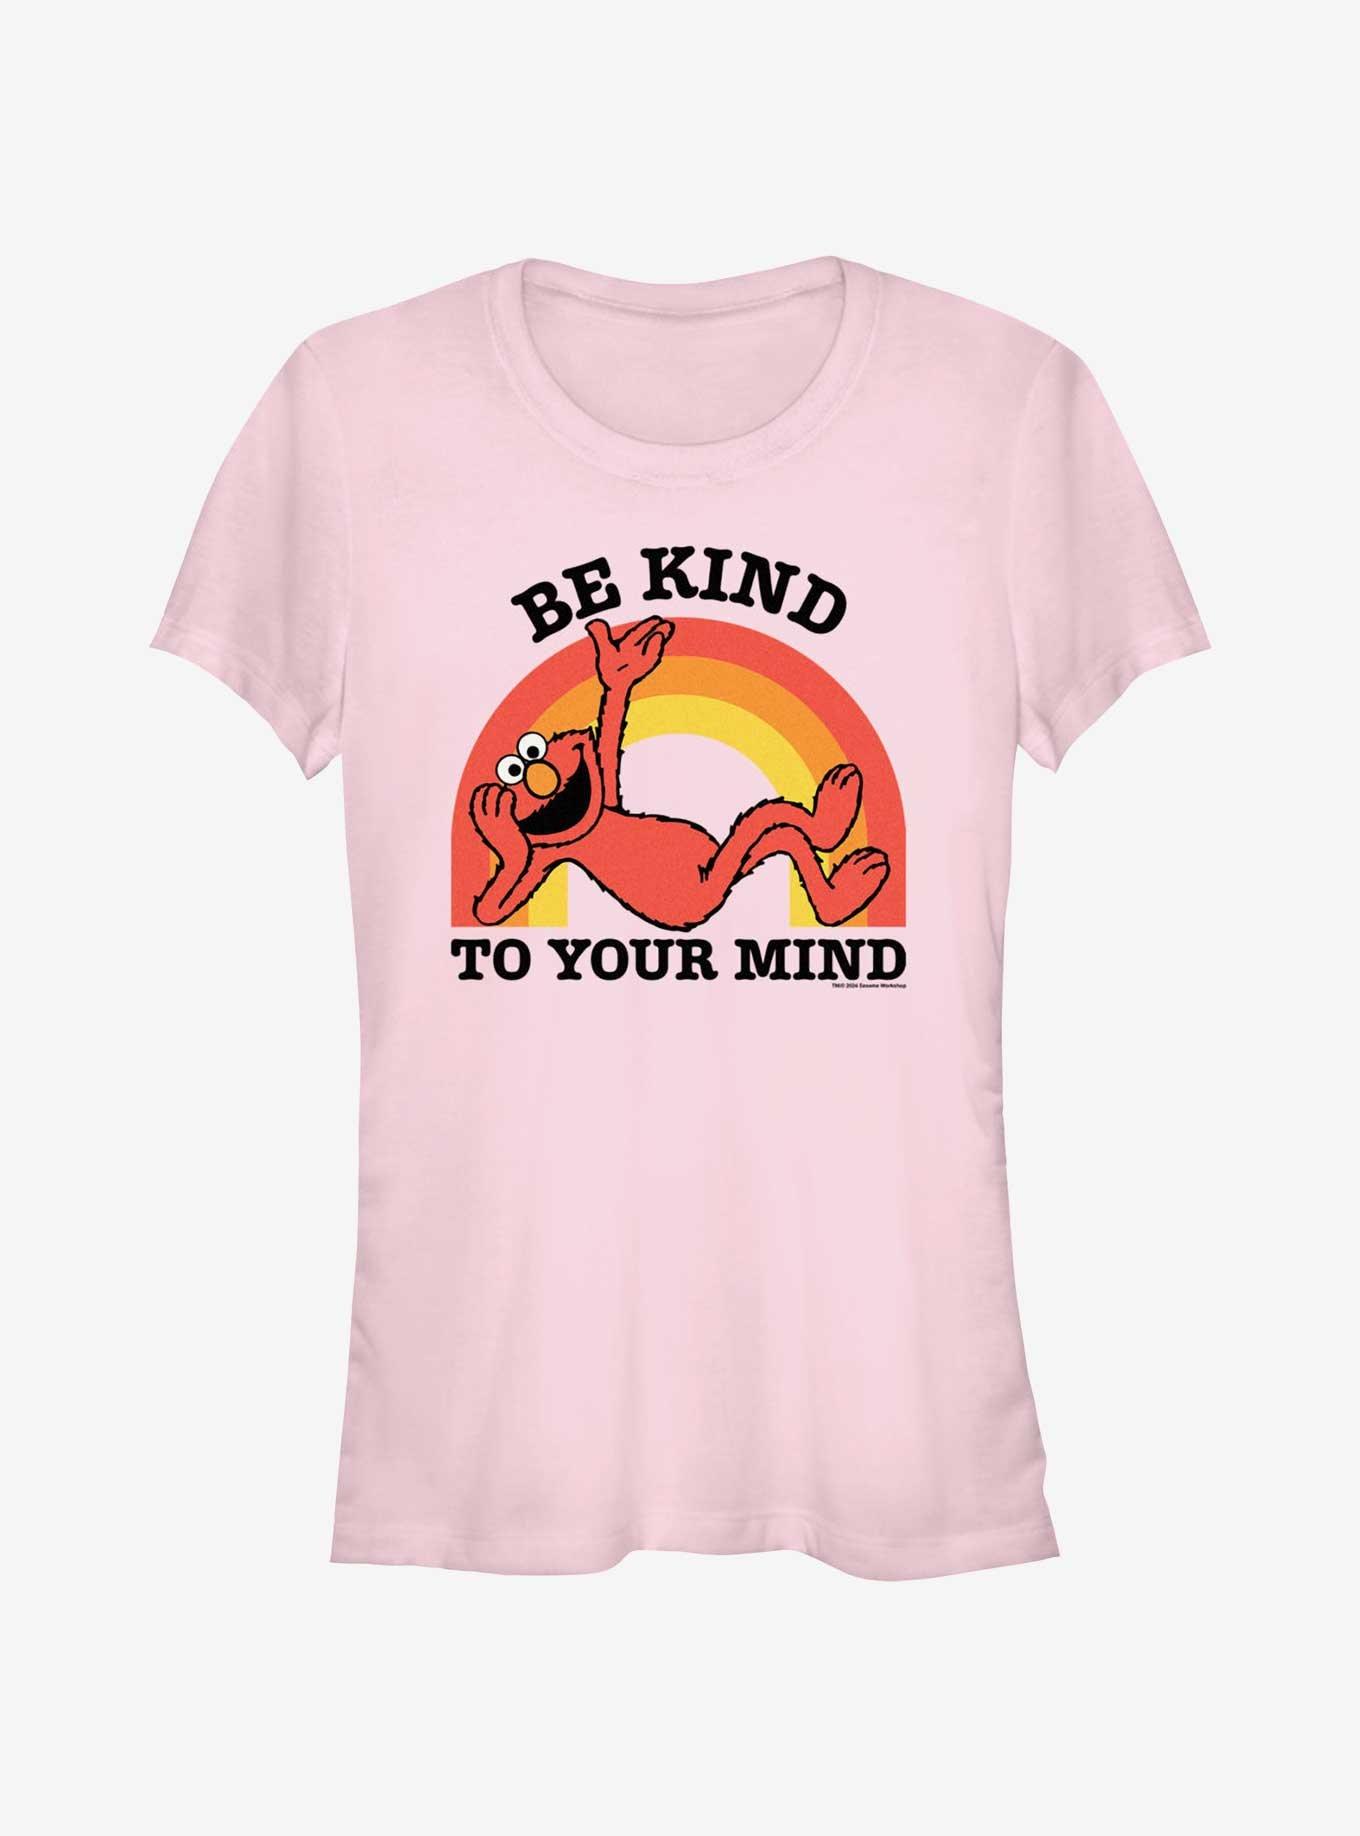 Sesame Street Elmo Be Kind To Your Mind Girls T-Shirt, LIGHT PINK, hi-res